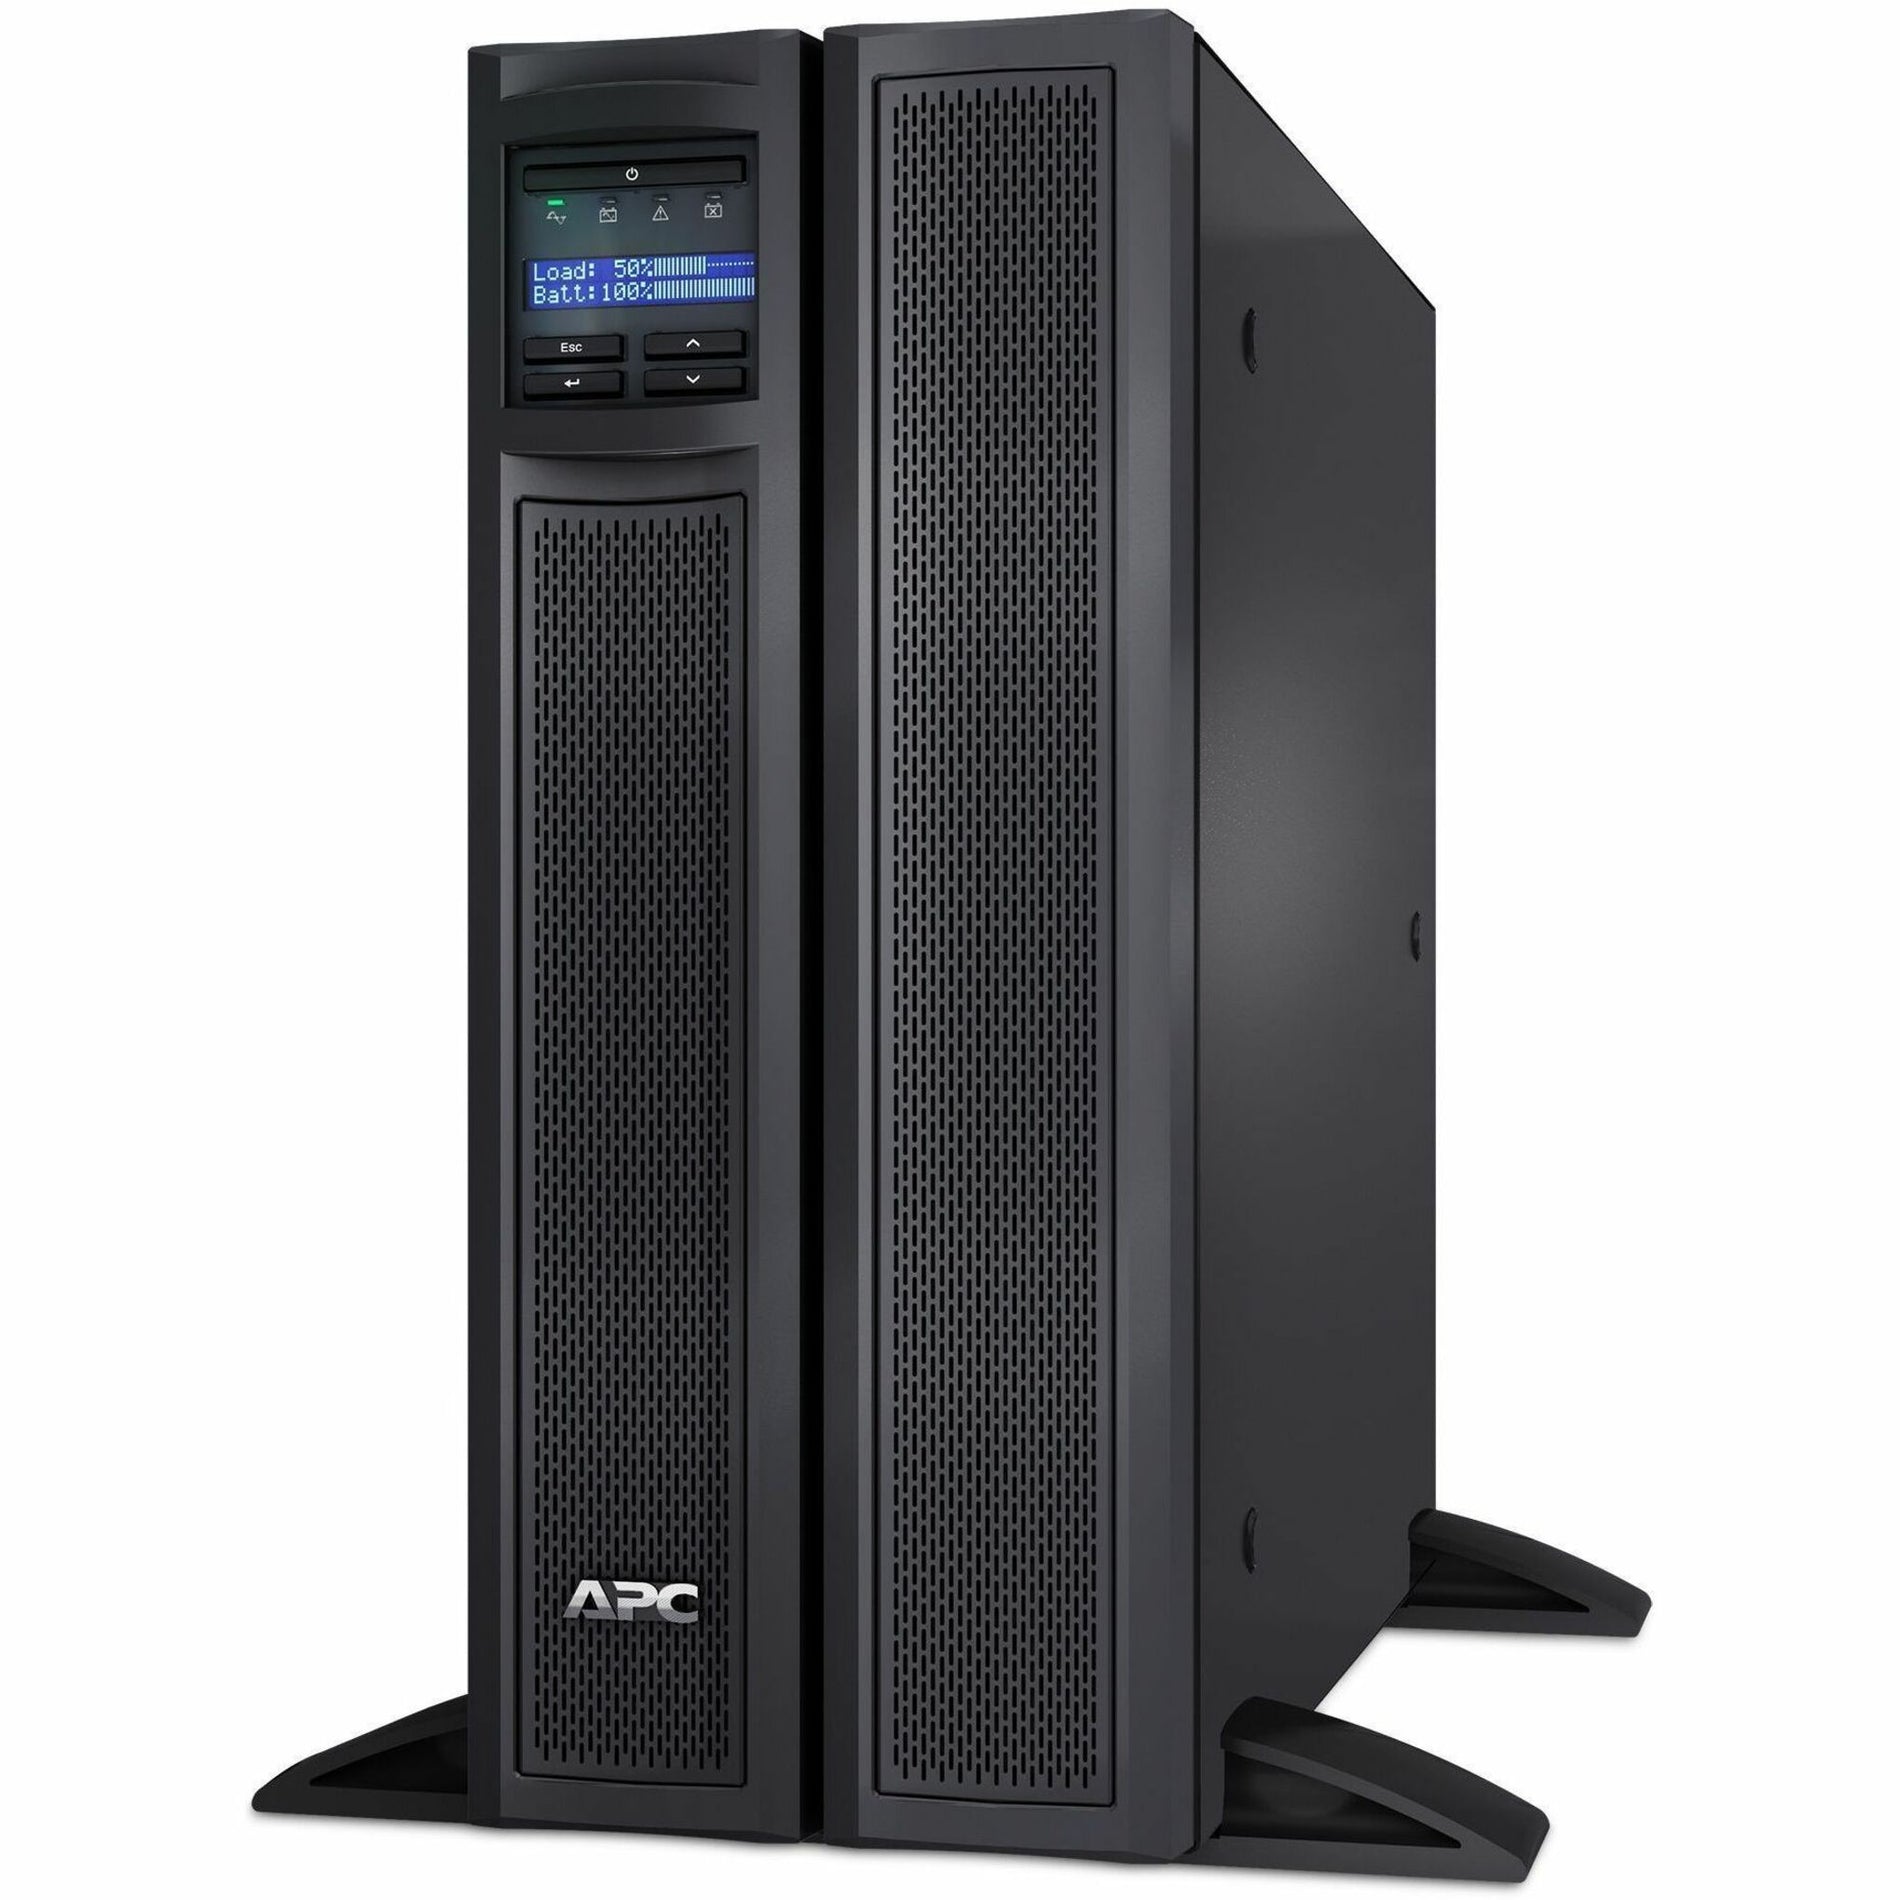 APC Smart-UPS X 3000VA Kurz Tiefe Turm/Rack Konvertierbar LCD 208V (SMX3000HVT)